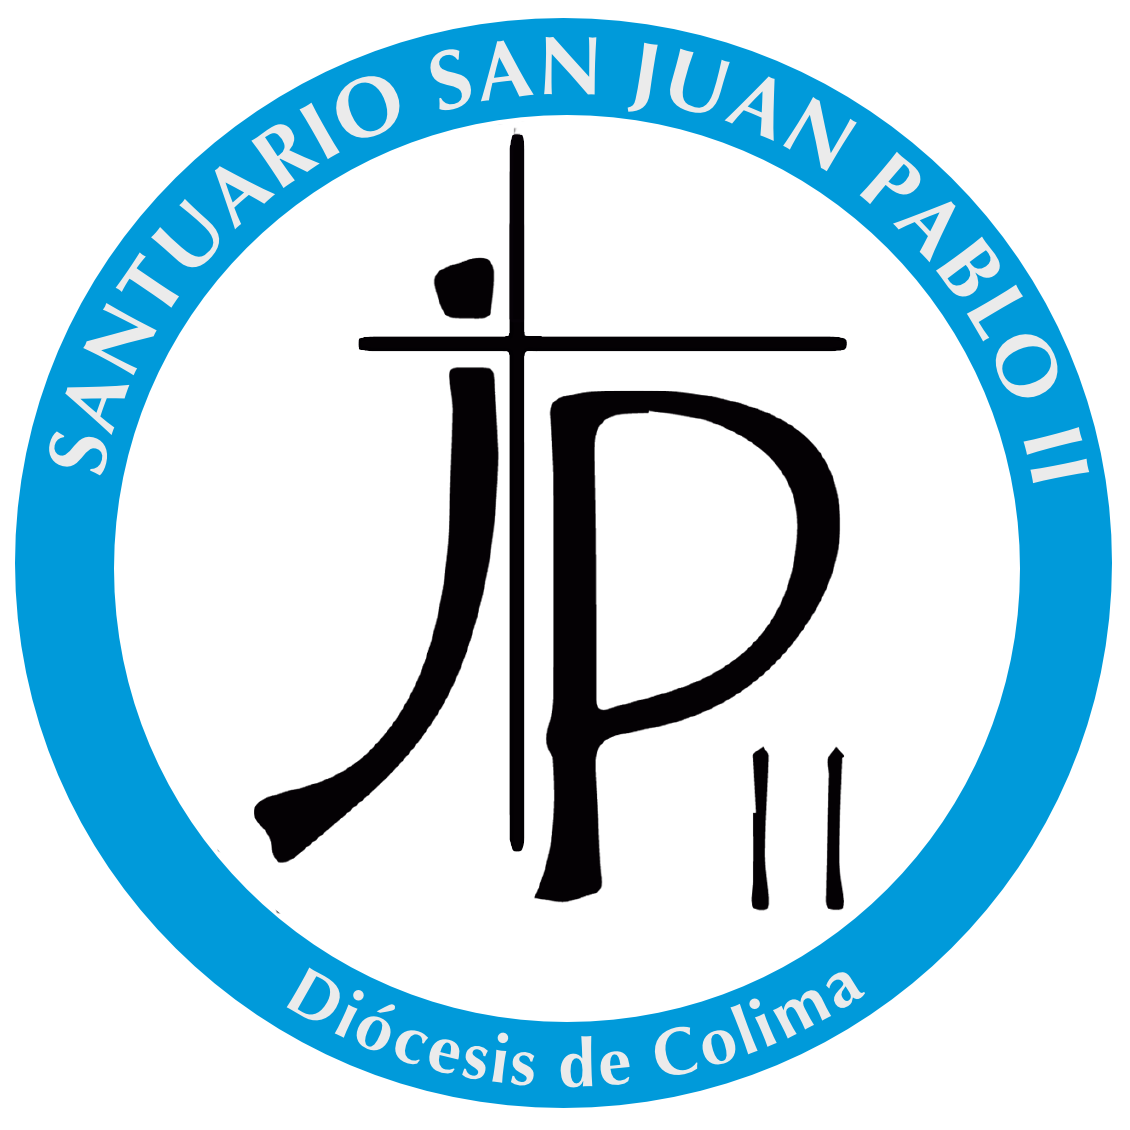 San Juan Pablo